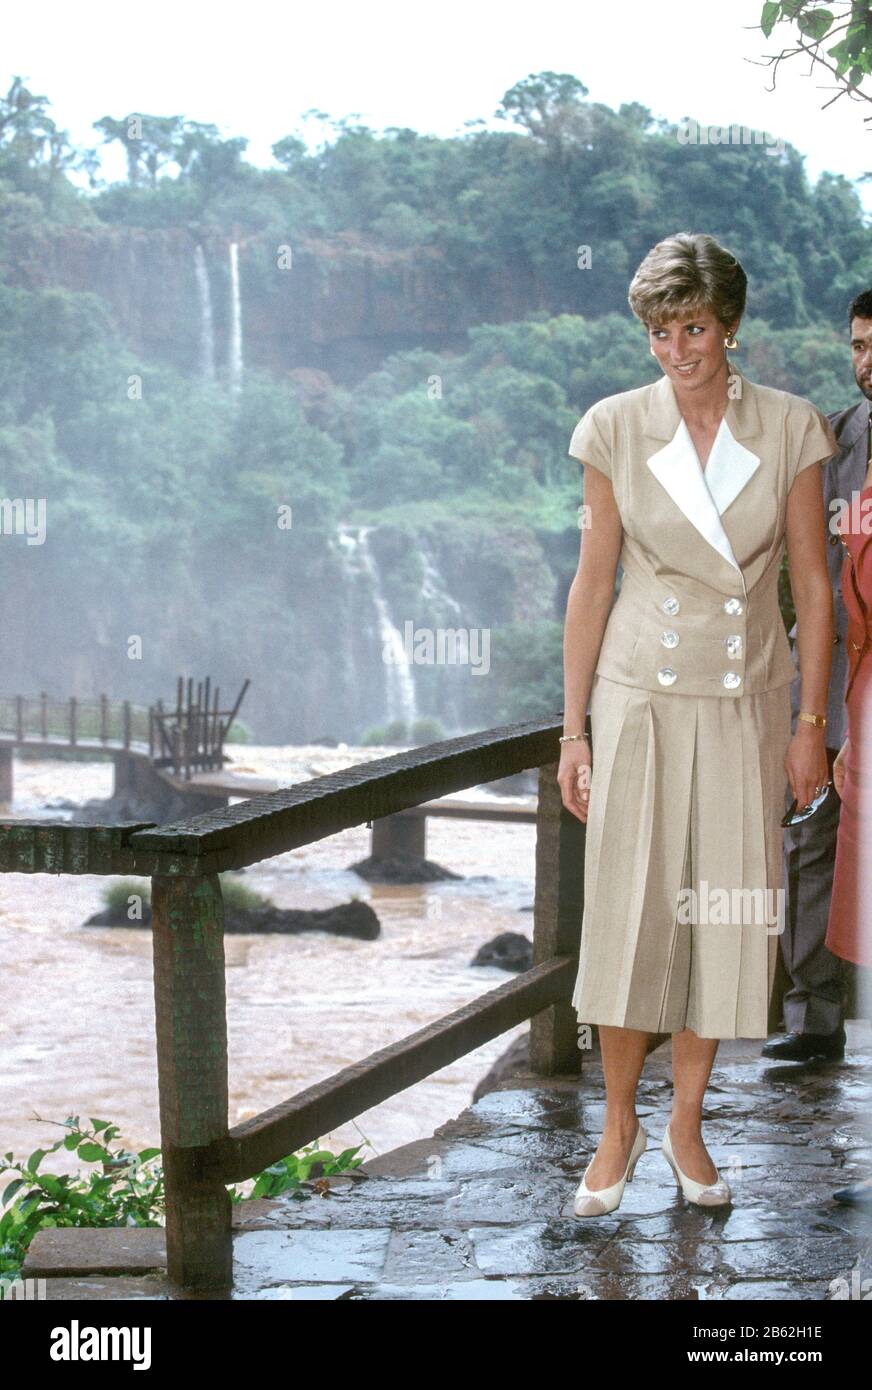 HRH Princess Diana visits the Iguacu Falls during her Royal Tour of Brazil April 1991 Stock Photo